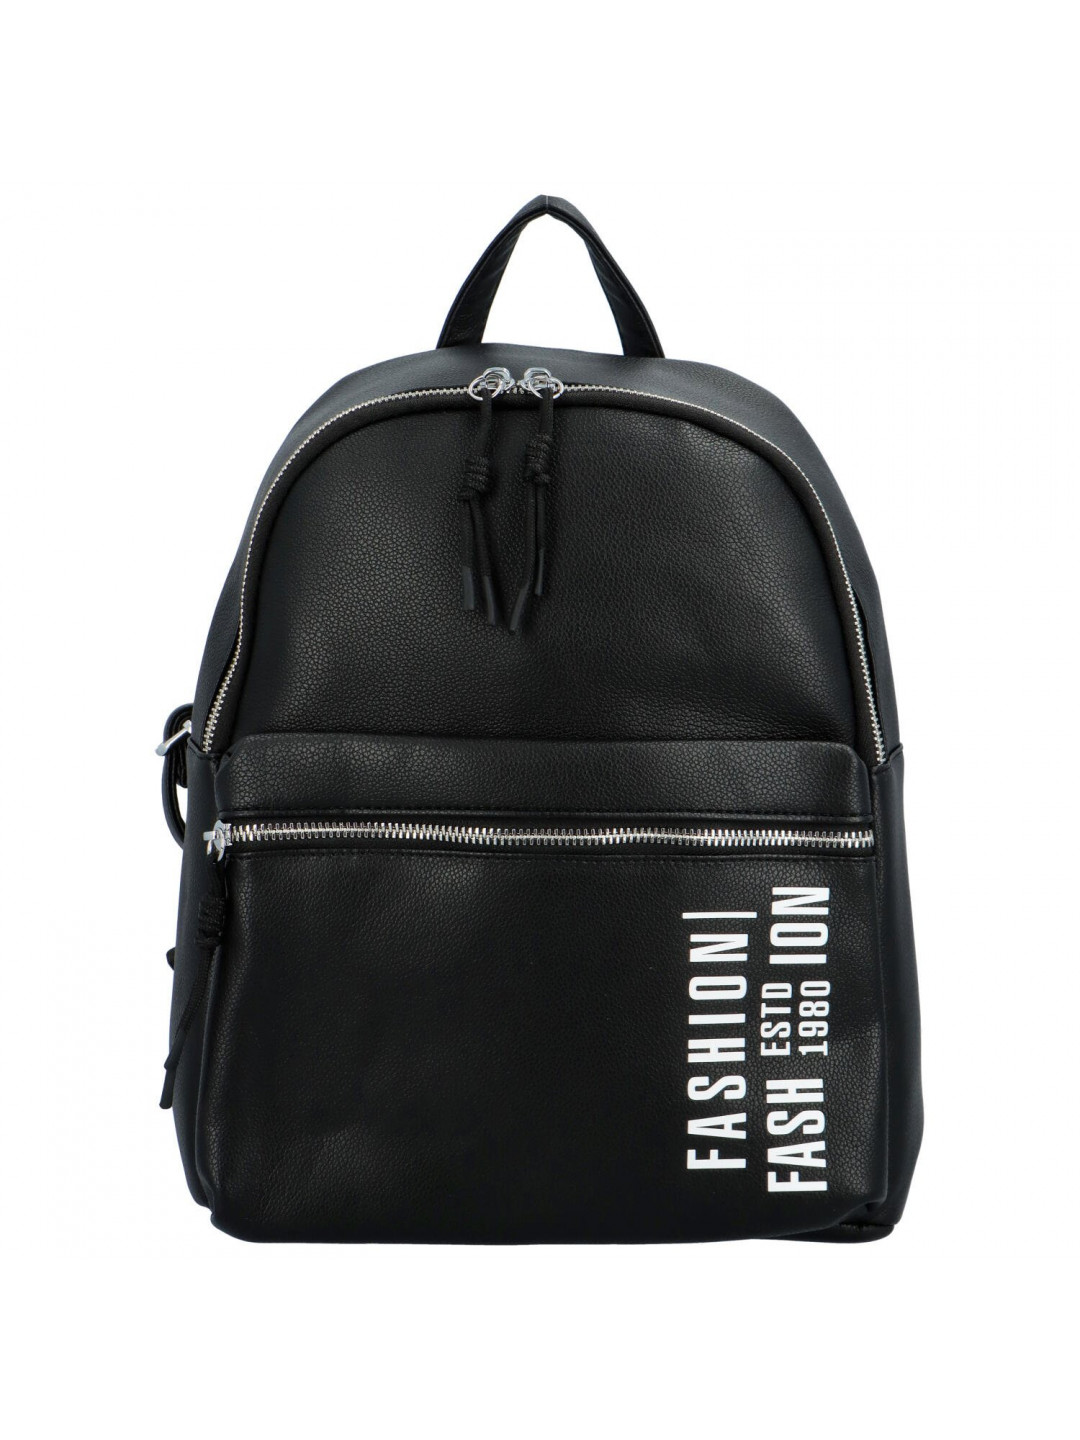 Trendový dámský koženkový batoh s potiskem Lia černý